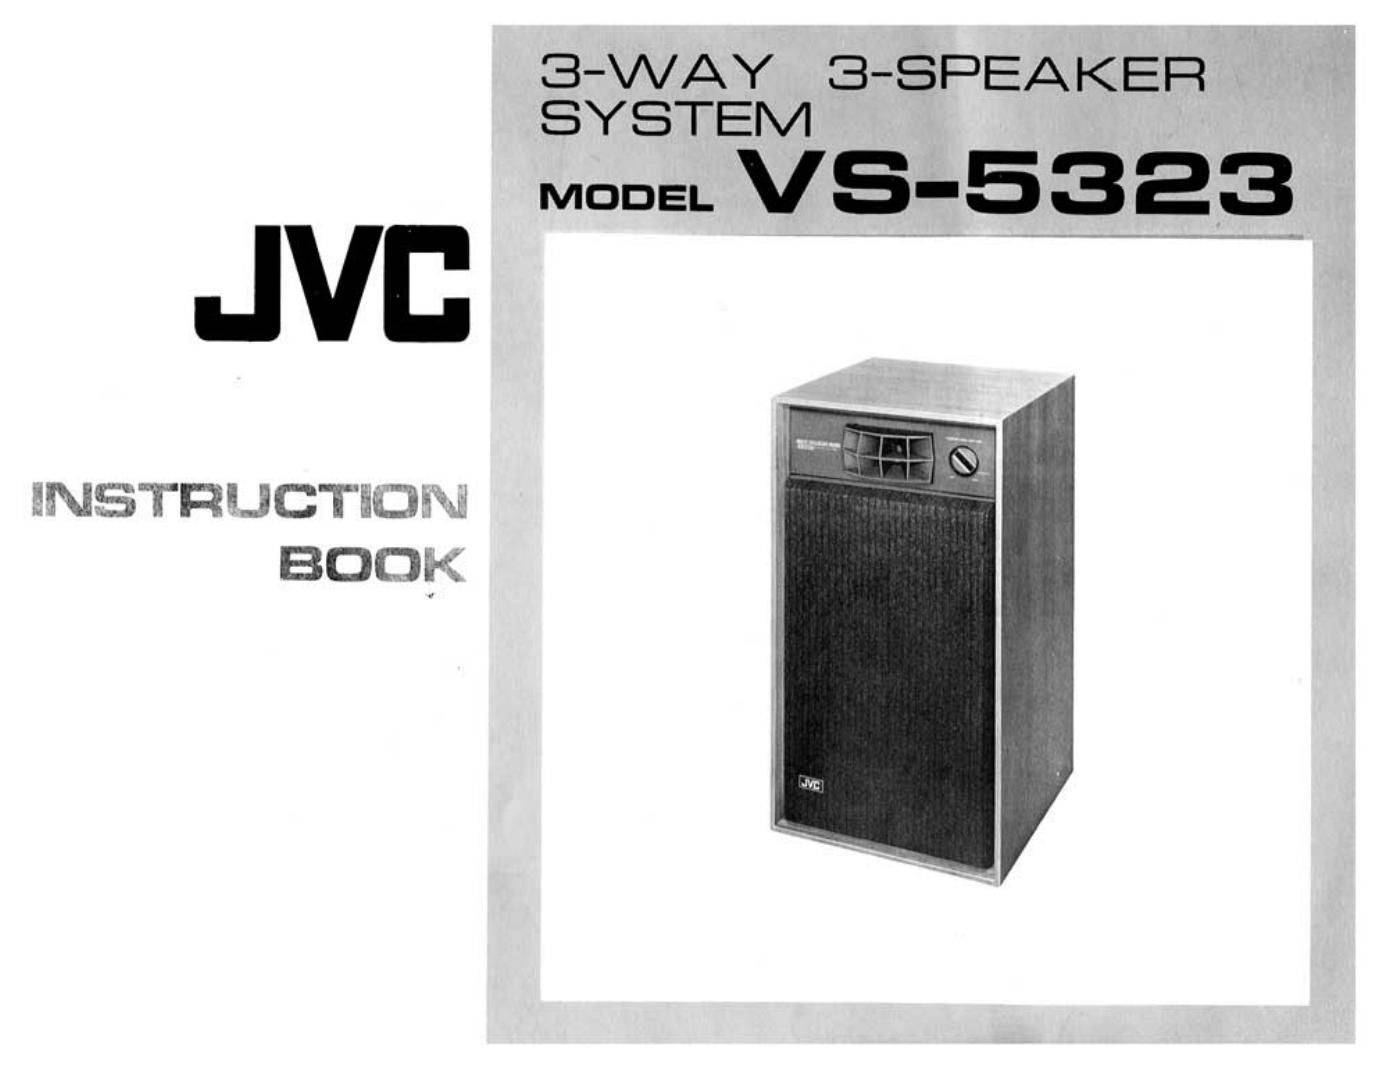 JVC VS-5323